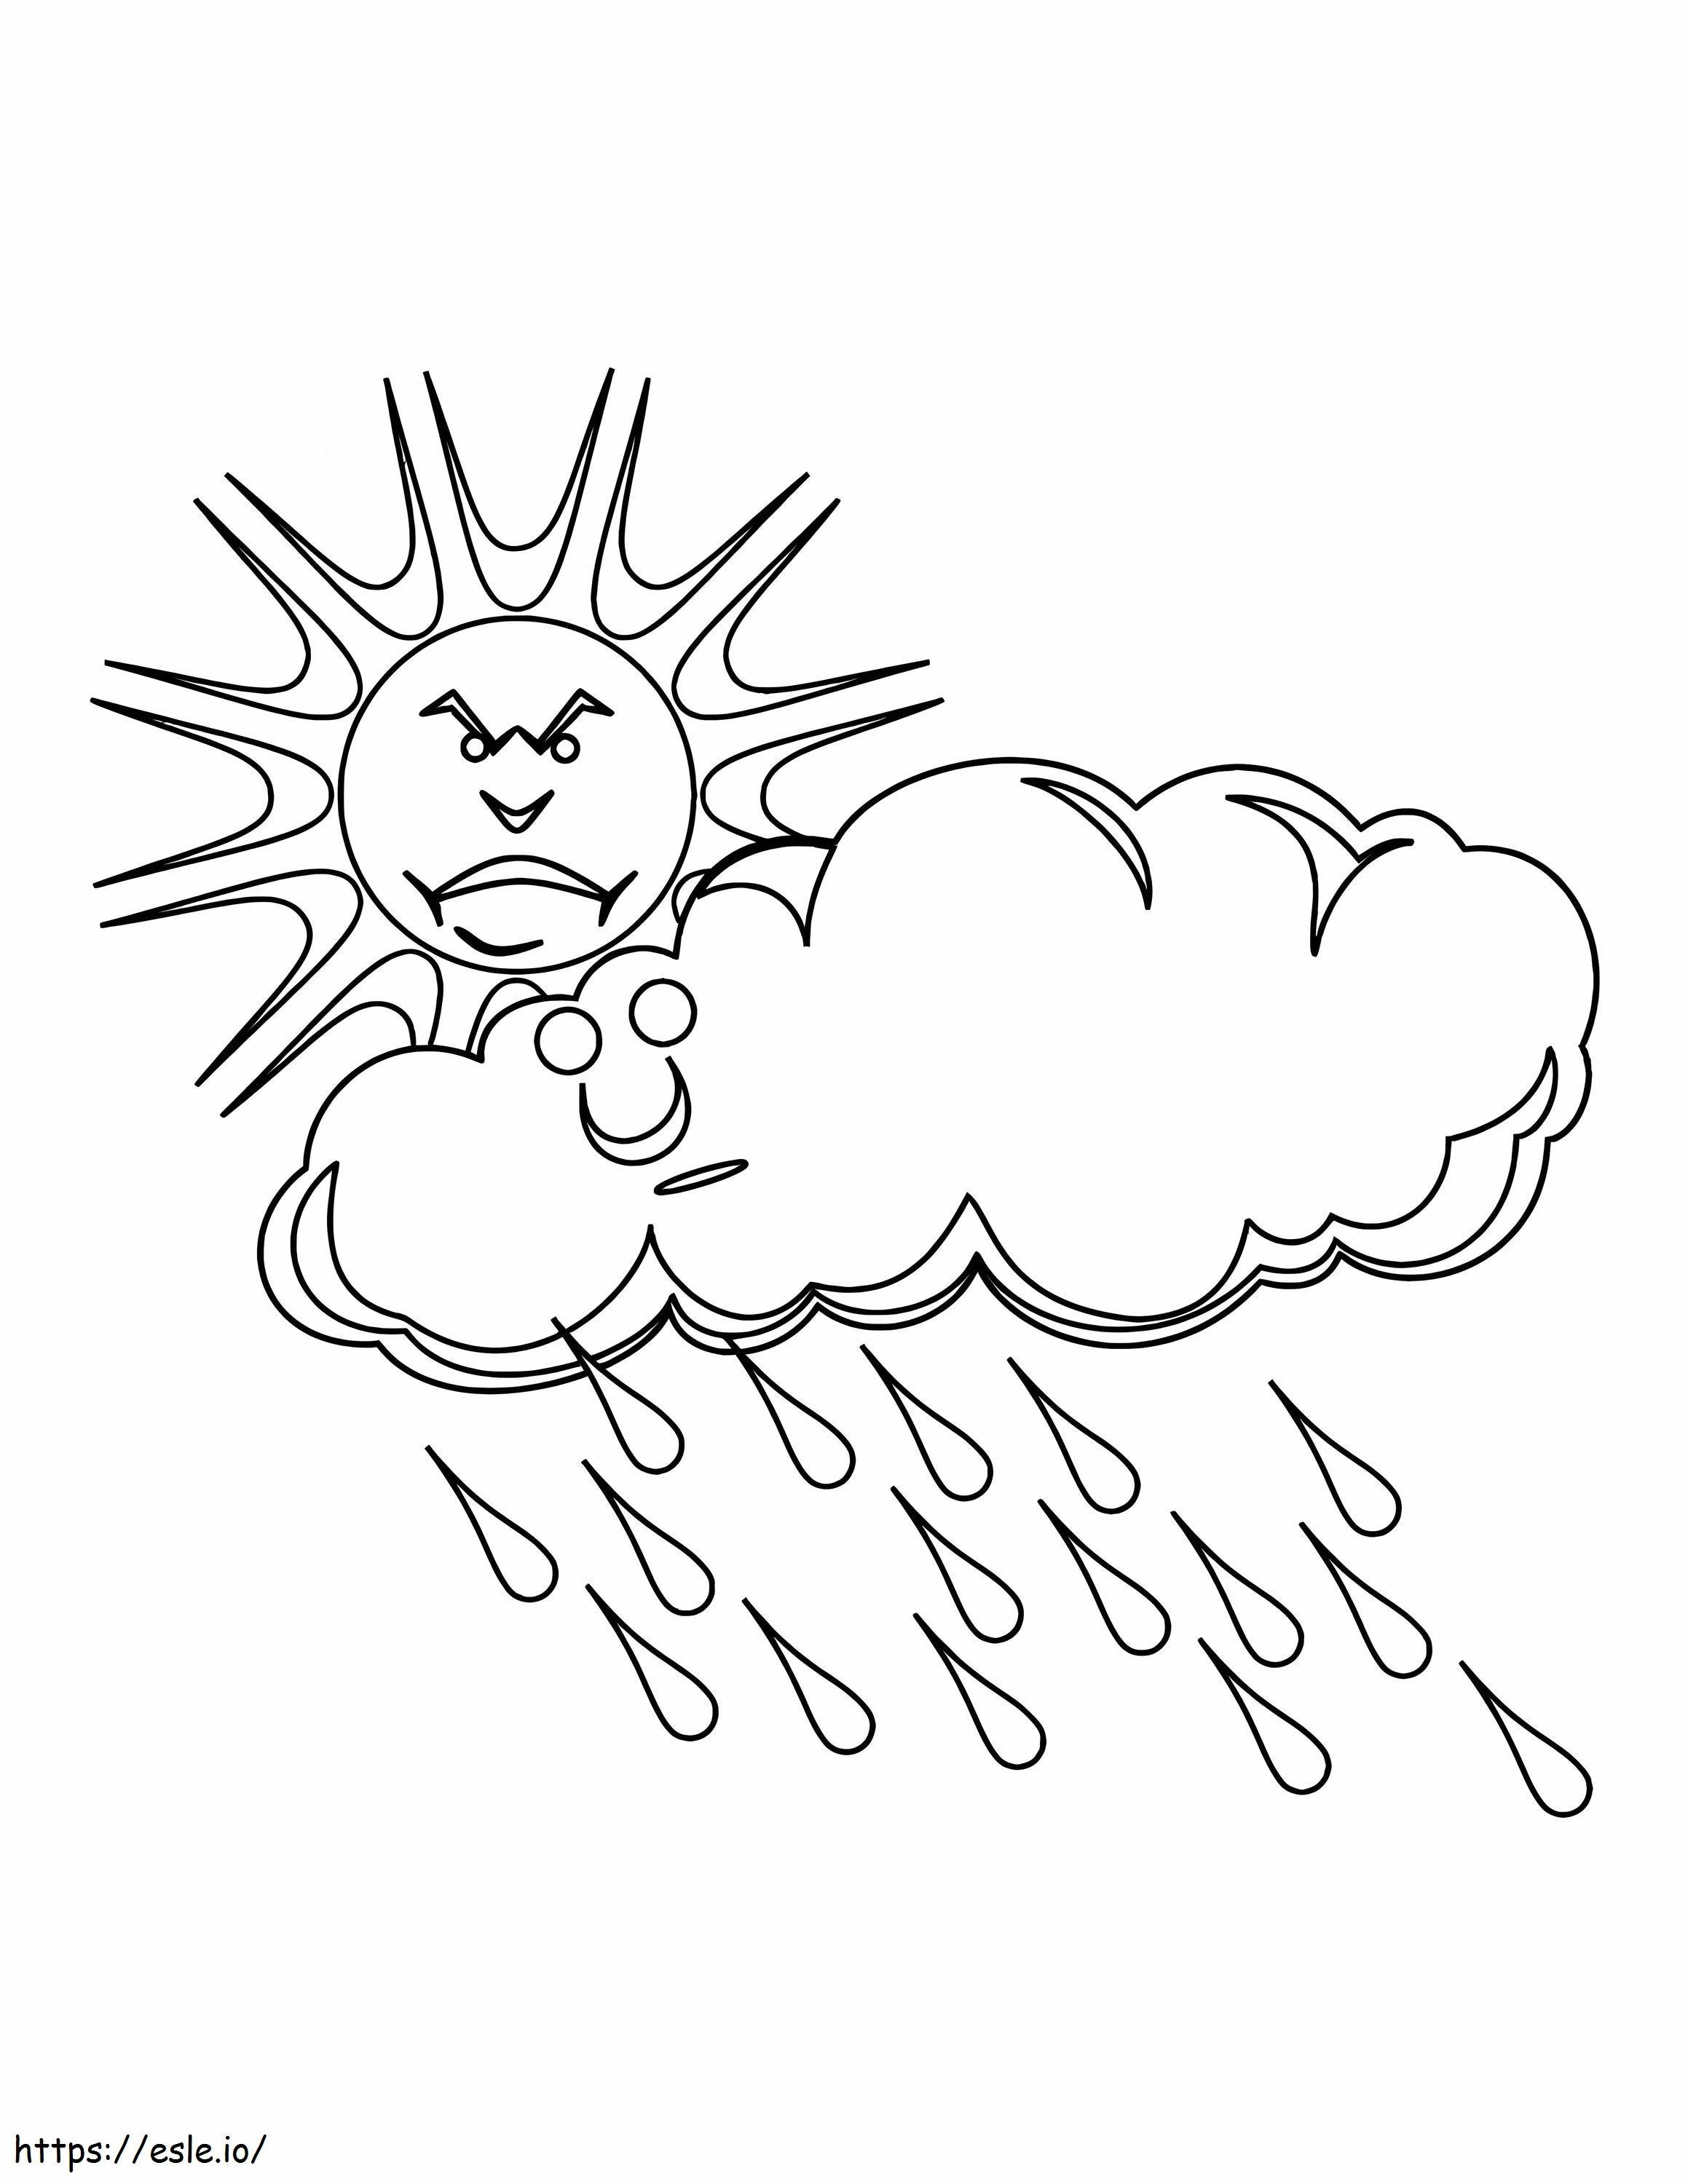 Sonne, Wütend, Mit, Regen, Von, Clouds ausmalbilder